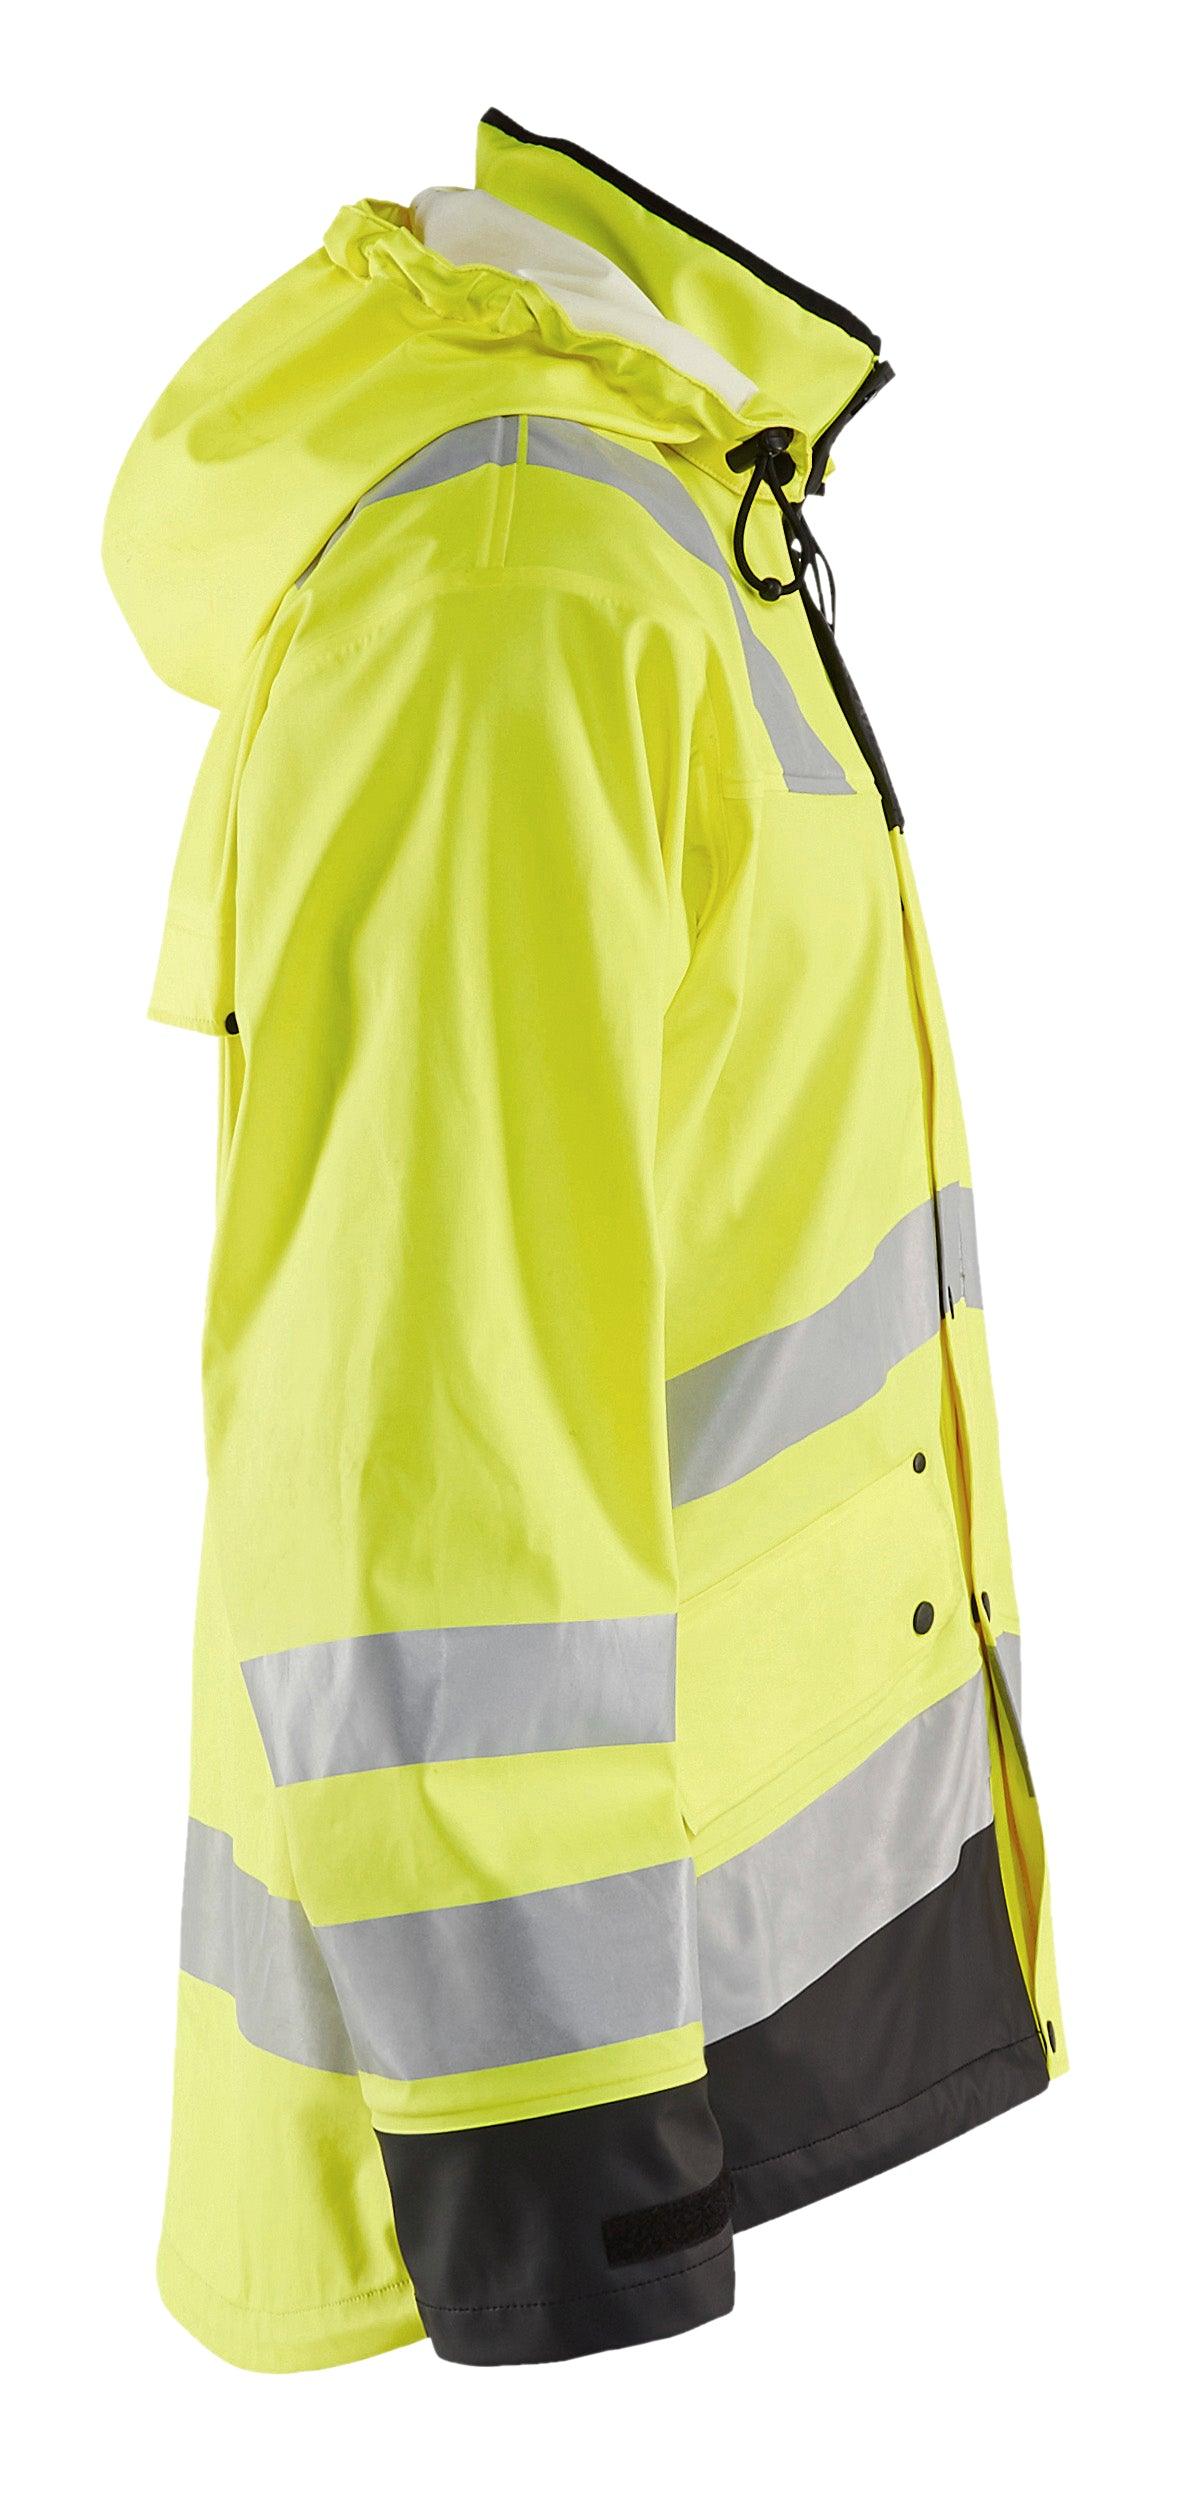 Blaklader 4312 Hi-Vis Waterproof Rain Jacket - Yellow Hi-Vis/Black - Trusted Gear Company LLC